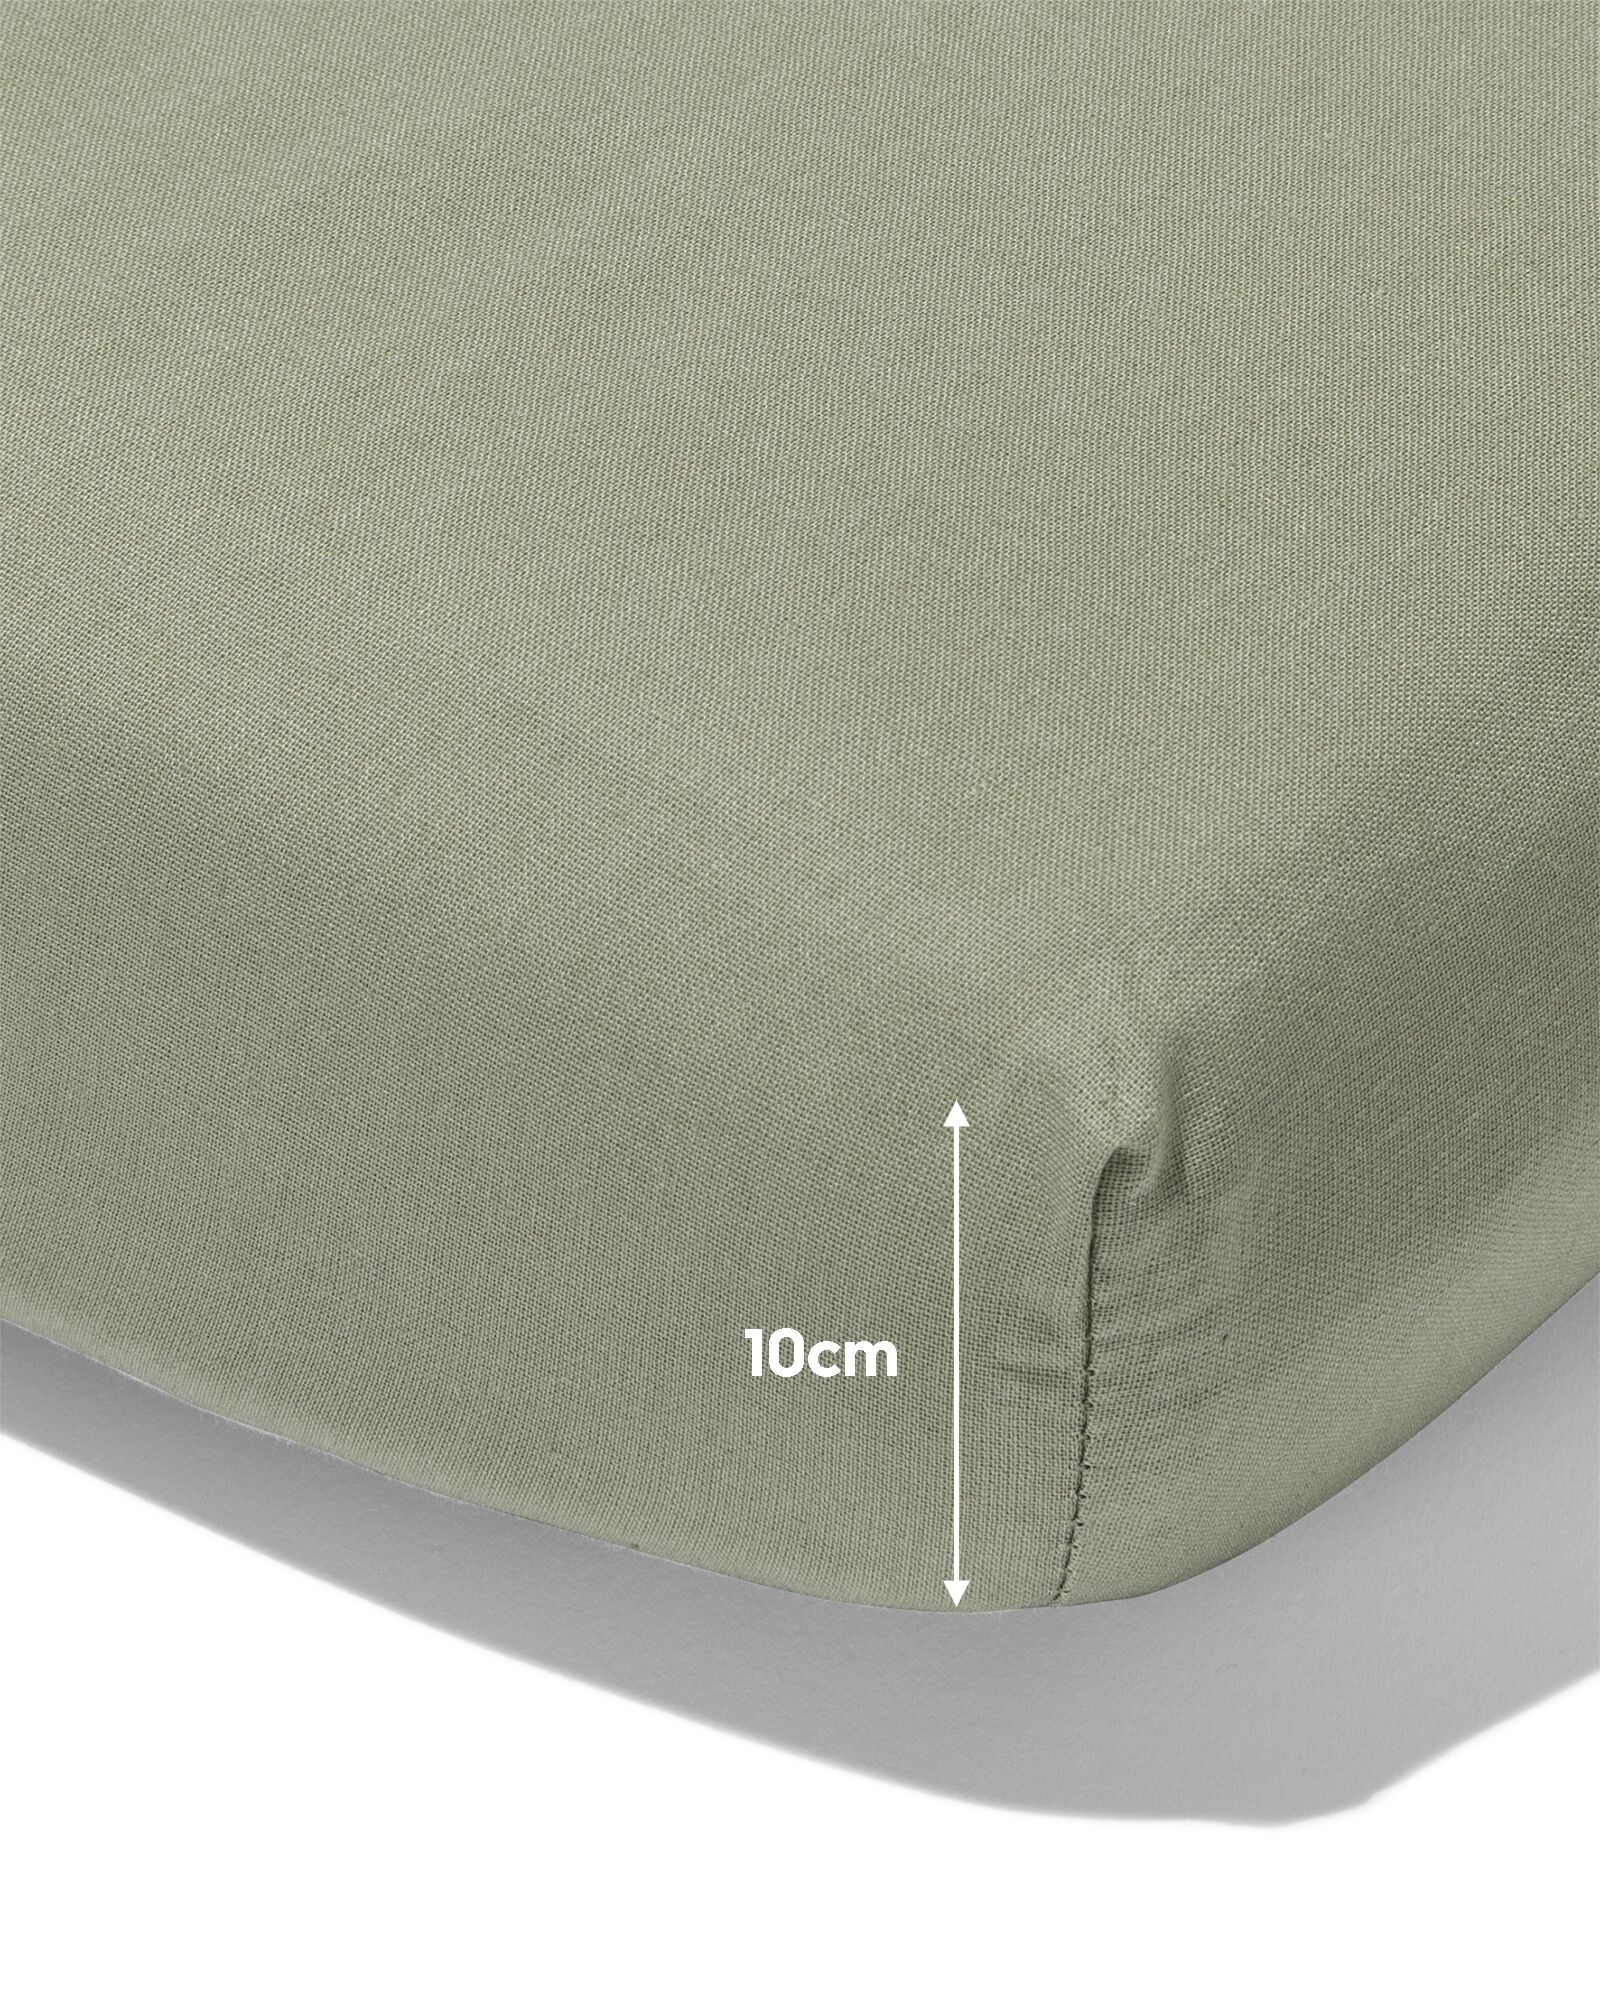 Matratzen-Topper-Spannbettlaken, Soft Cotton, 180 x 200 cm, grün - 5180087 - HEMA